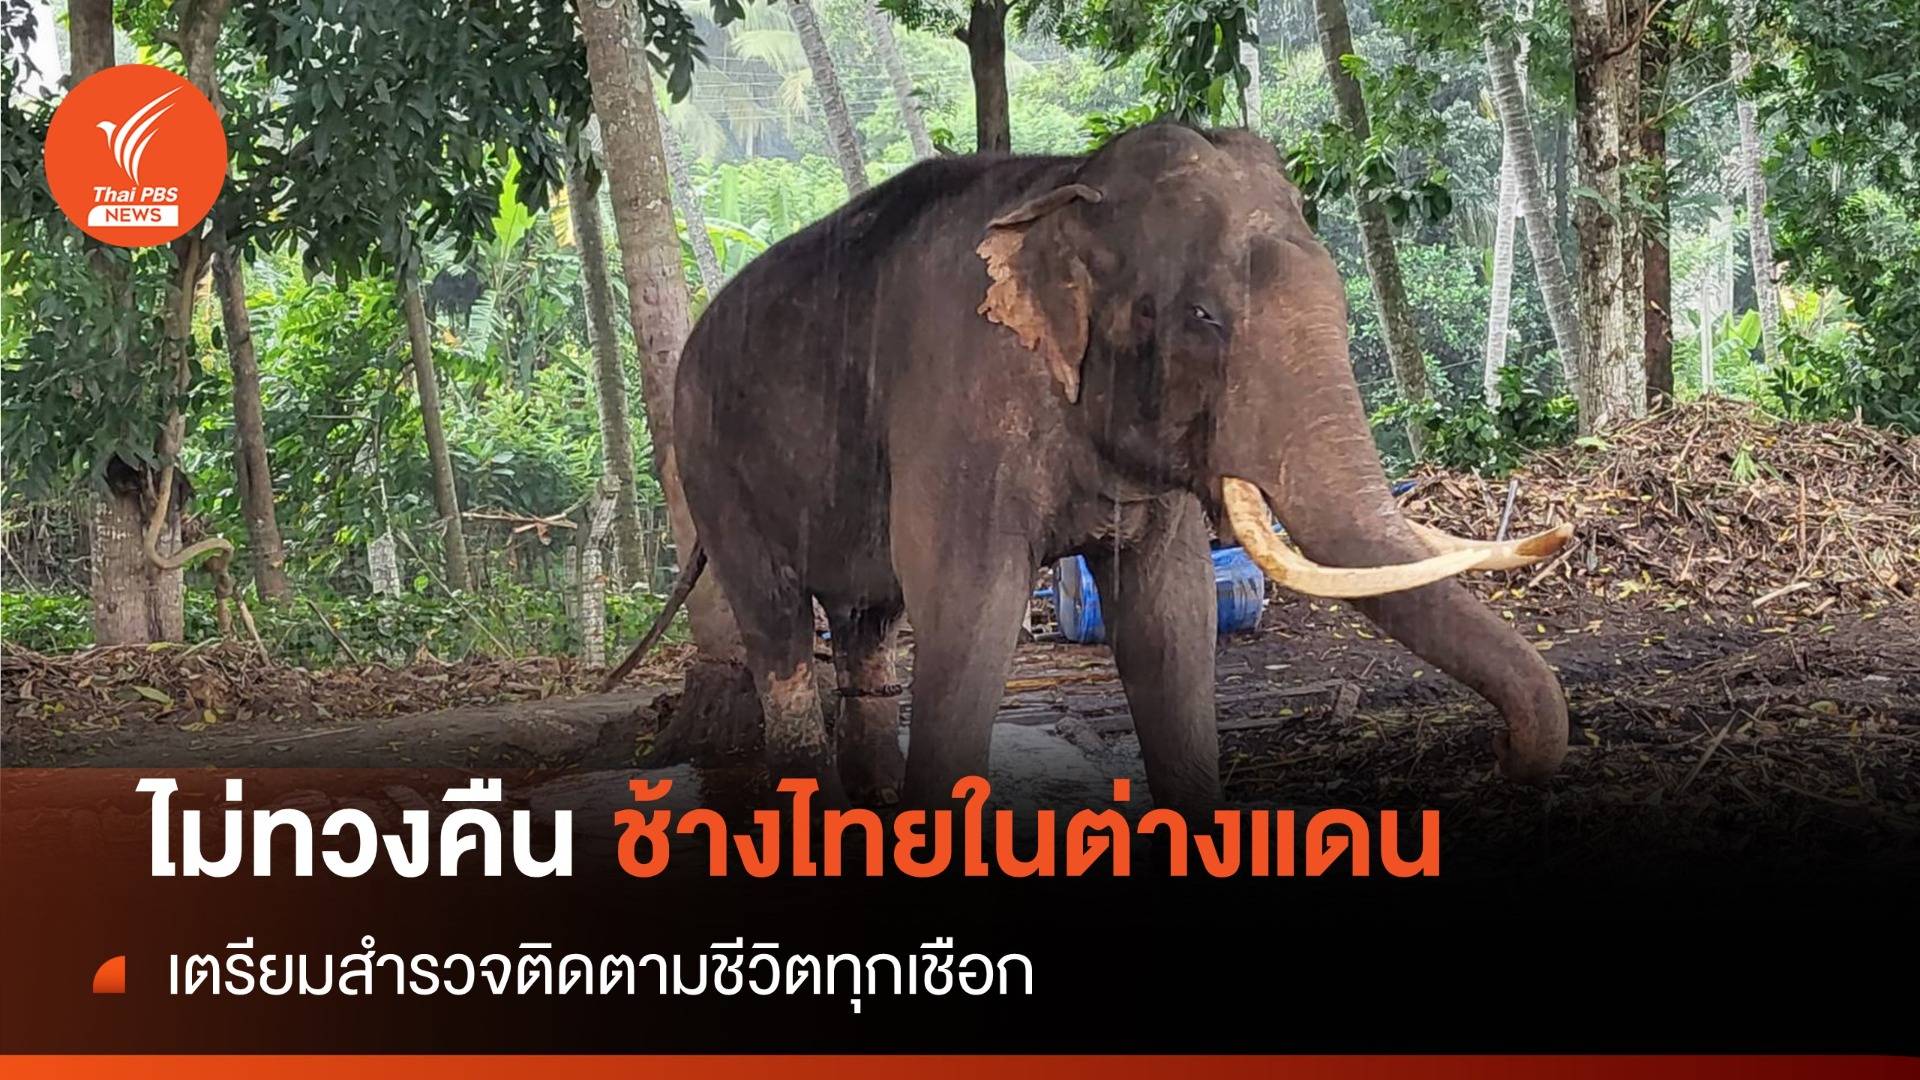 ไทยยันไม่คิดทวงคืน "ช้างไทยในต่างแดน" หลังข่าวศรีลังกาขู่ฟ้อง 